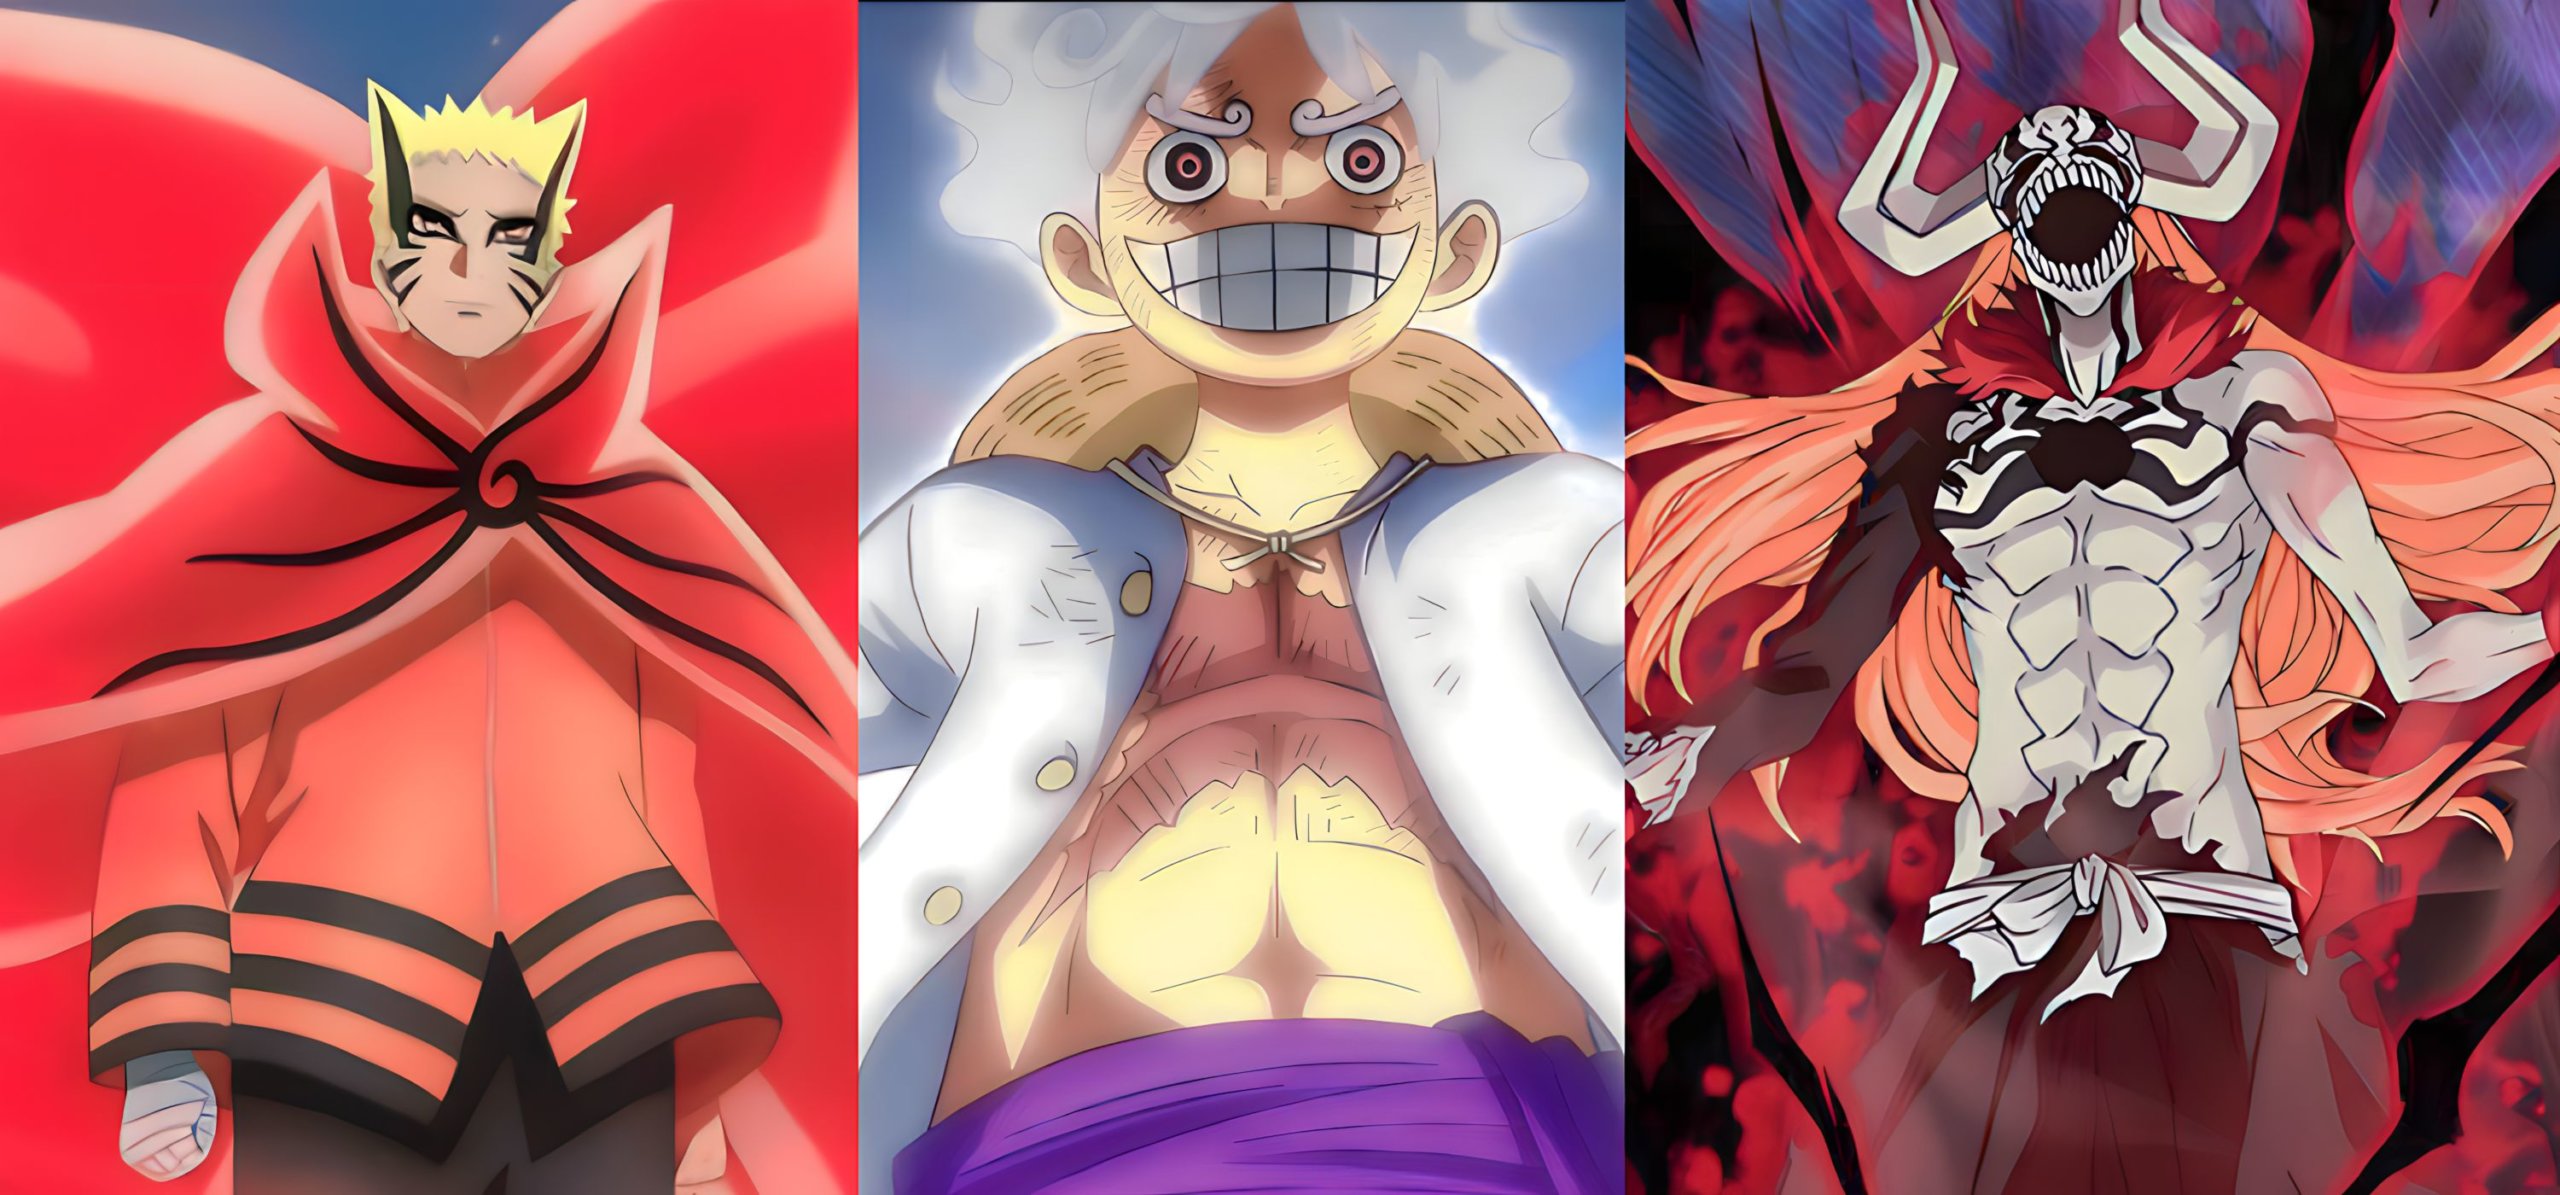 Big 3 Anime - One Piece, Naruto, Bleach 